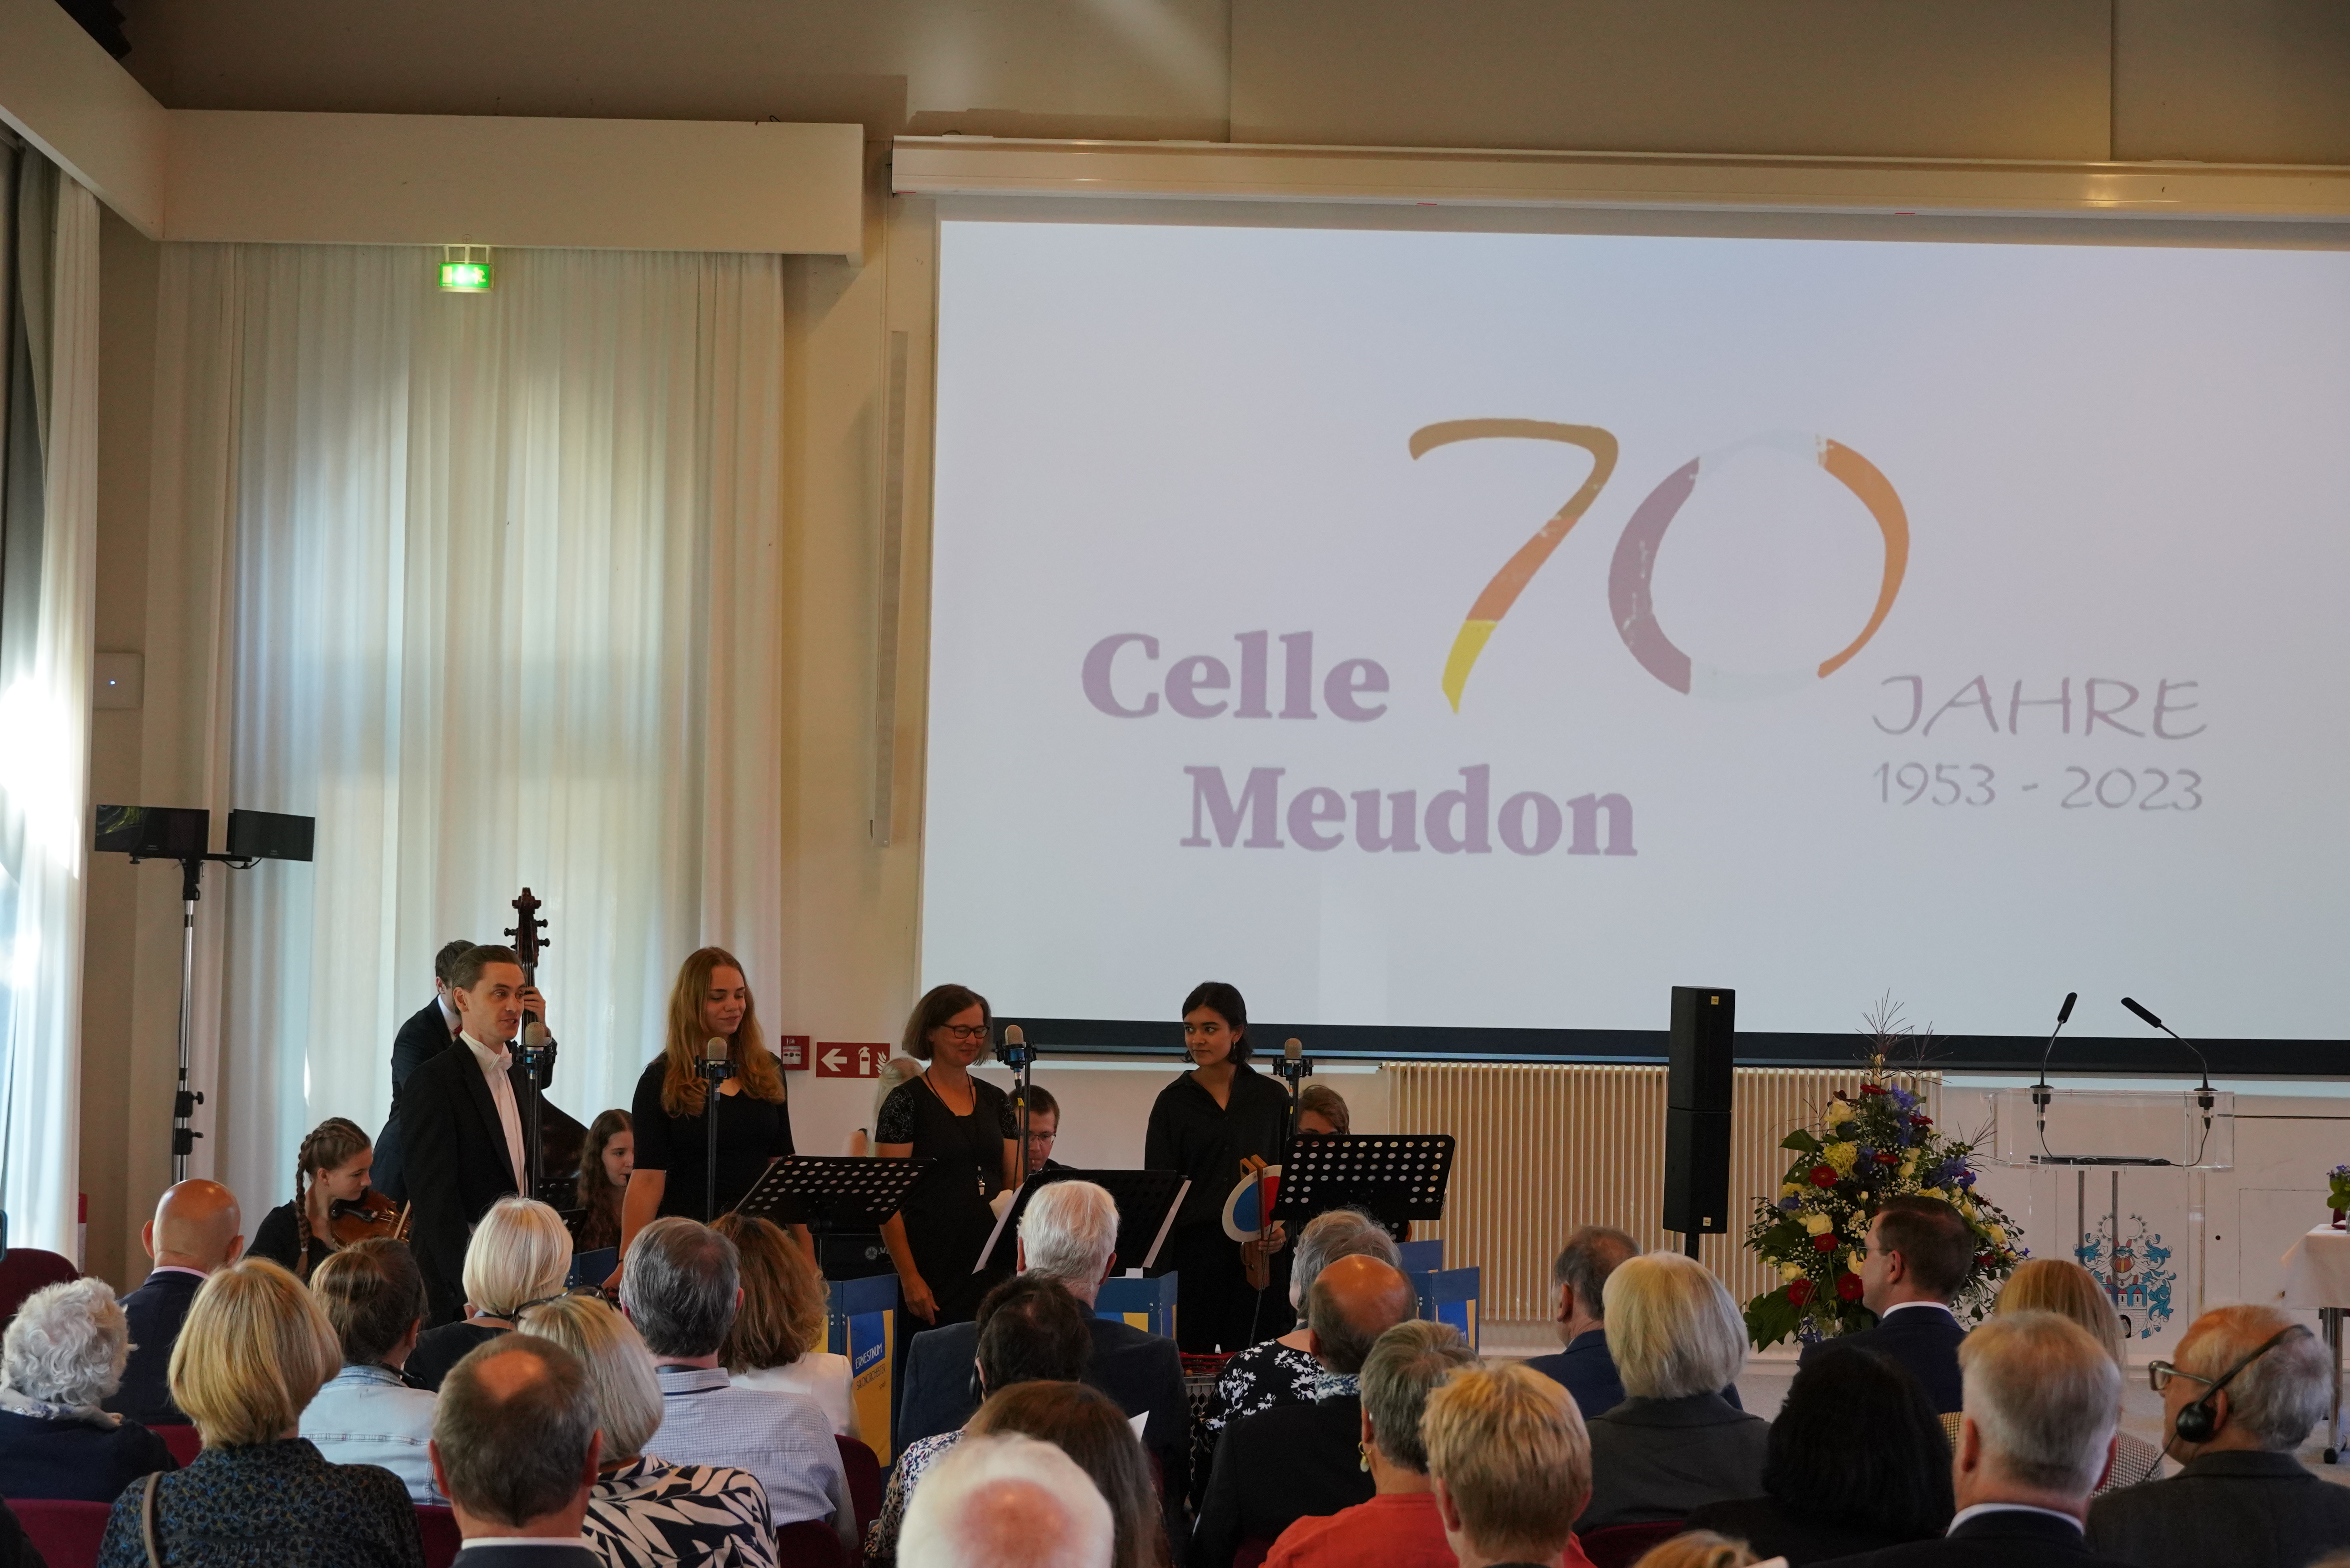 Salonorchester gestaltet musikalischen Rahmen zum 70. Jubiläum der Städtepartnerschaft Celle und Meudon